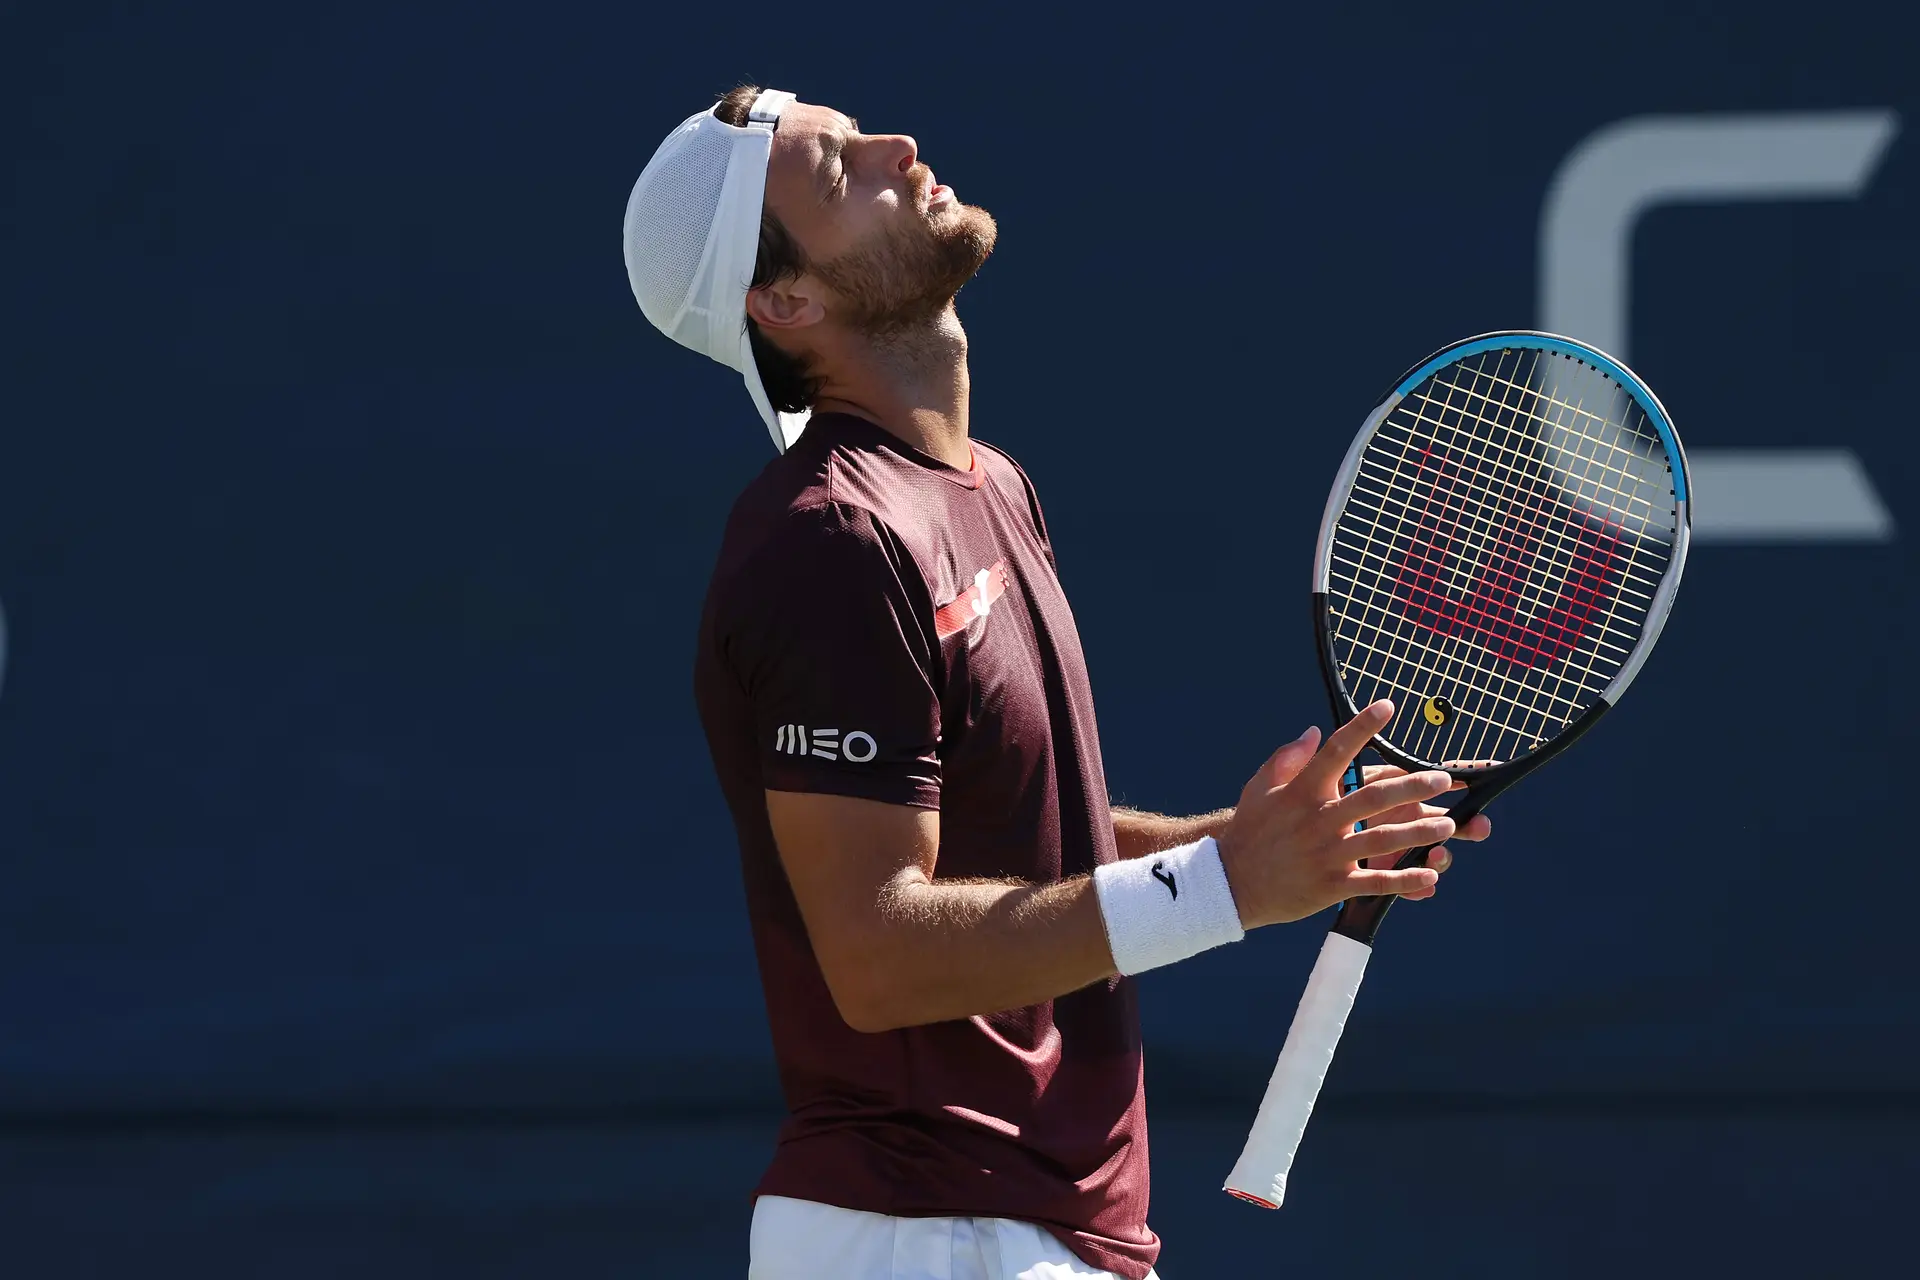 Tudo sai bem a Novak Djokovic até ISTO., By Bola Amarela